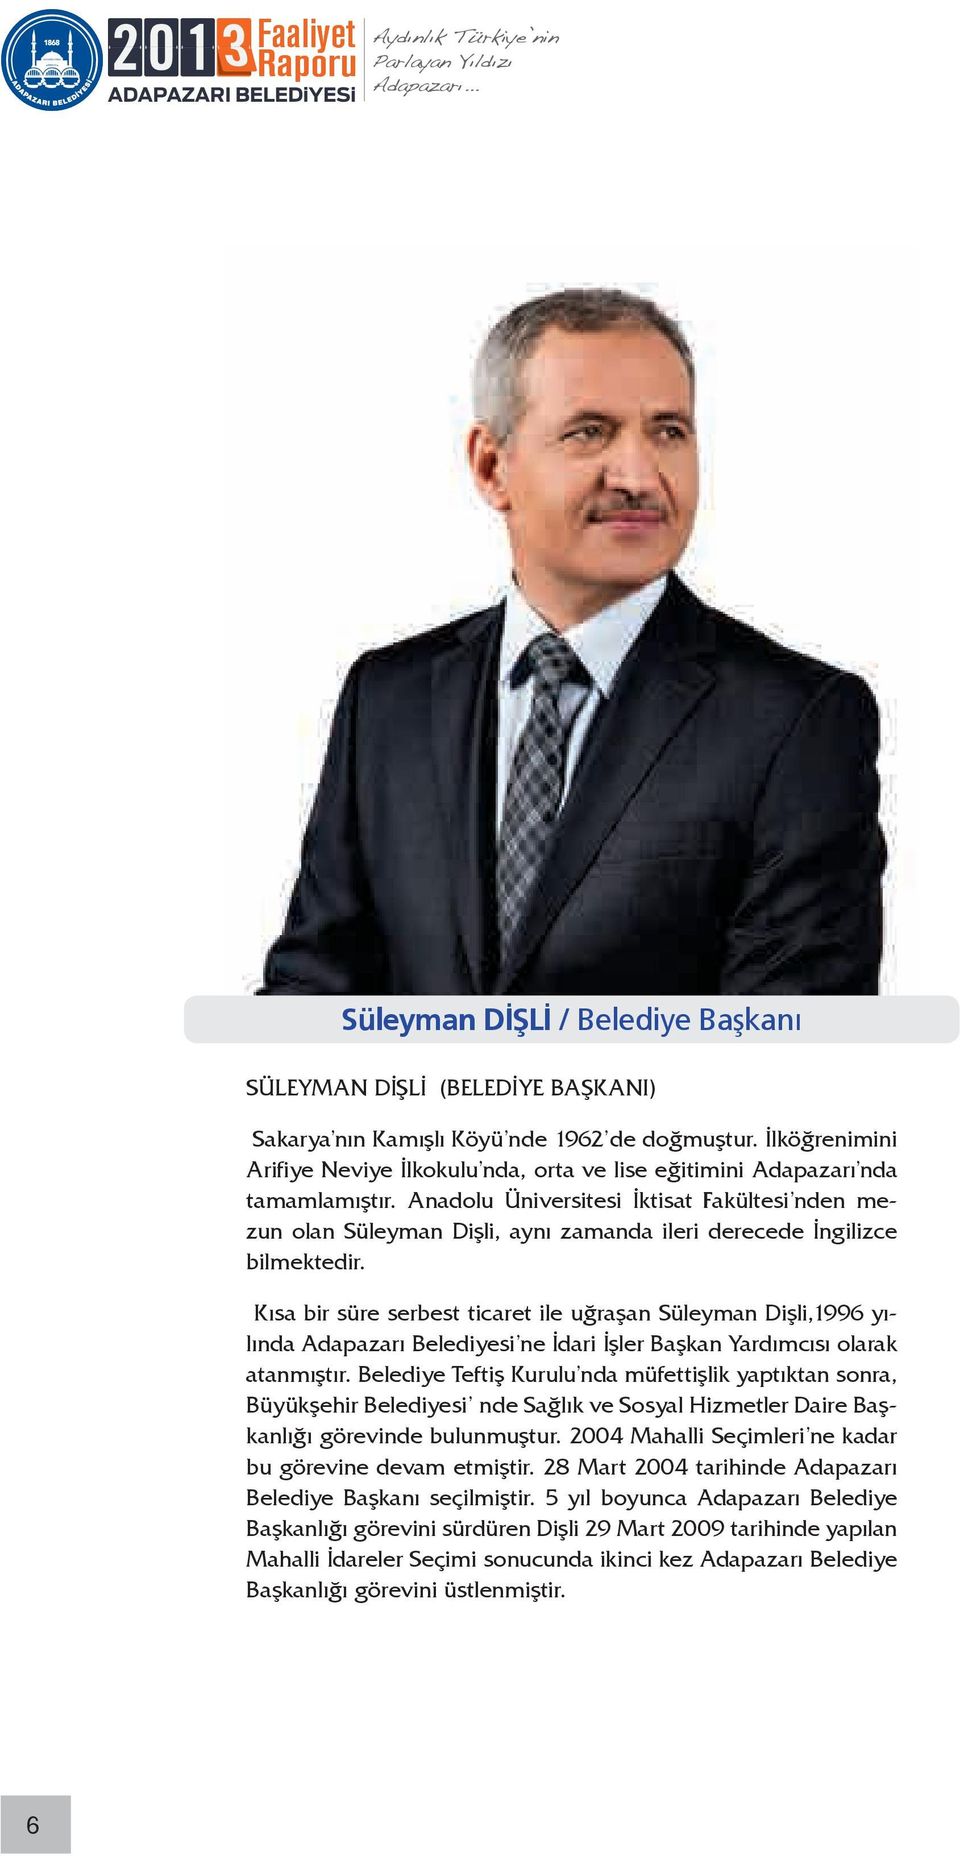 Anadolu Üniversitesi İktisat Fakültesi nden mezun olan Süleyman Dişli, aynı zamanda ileri derecede İngilizce bilmektedir.